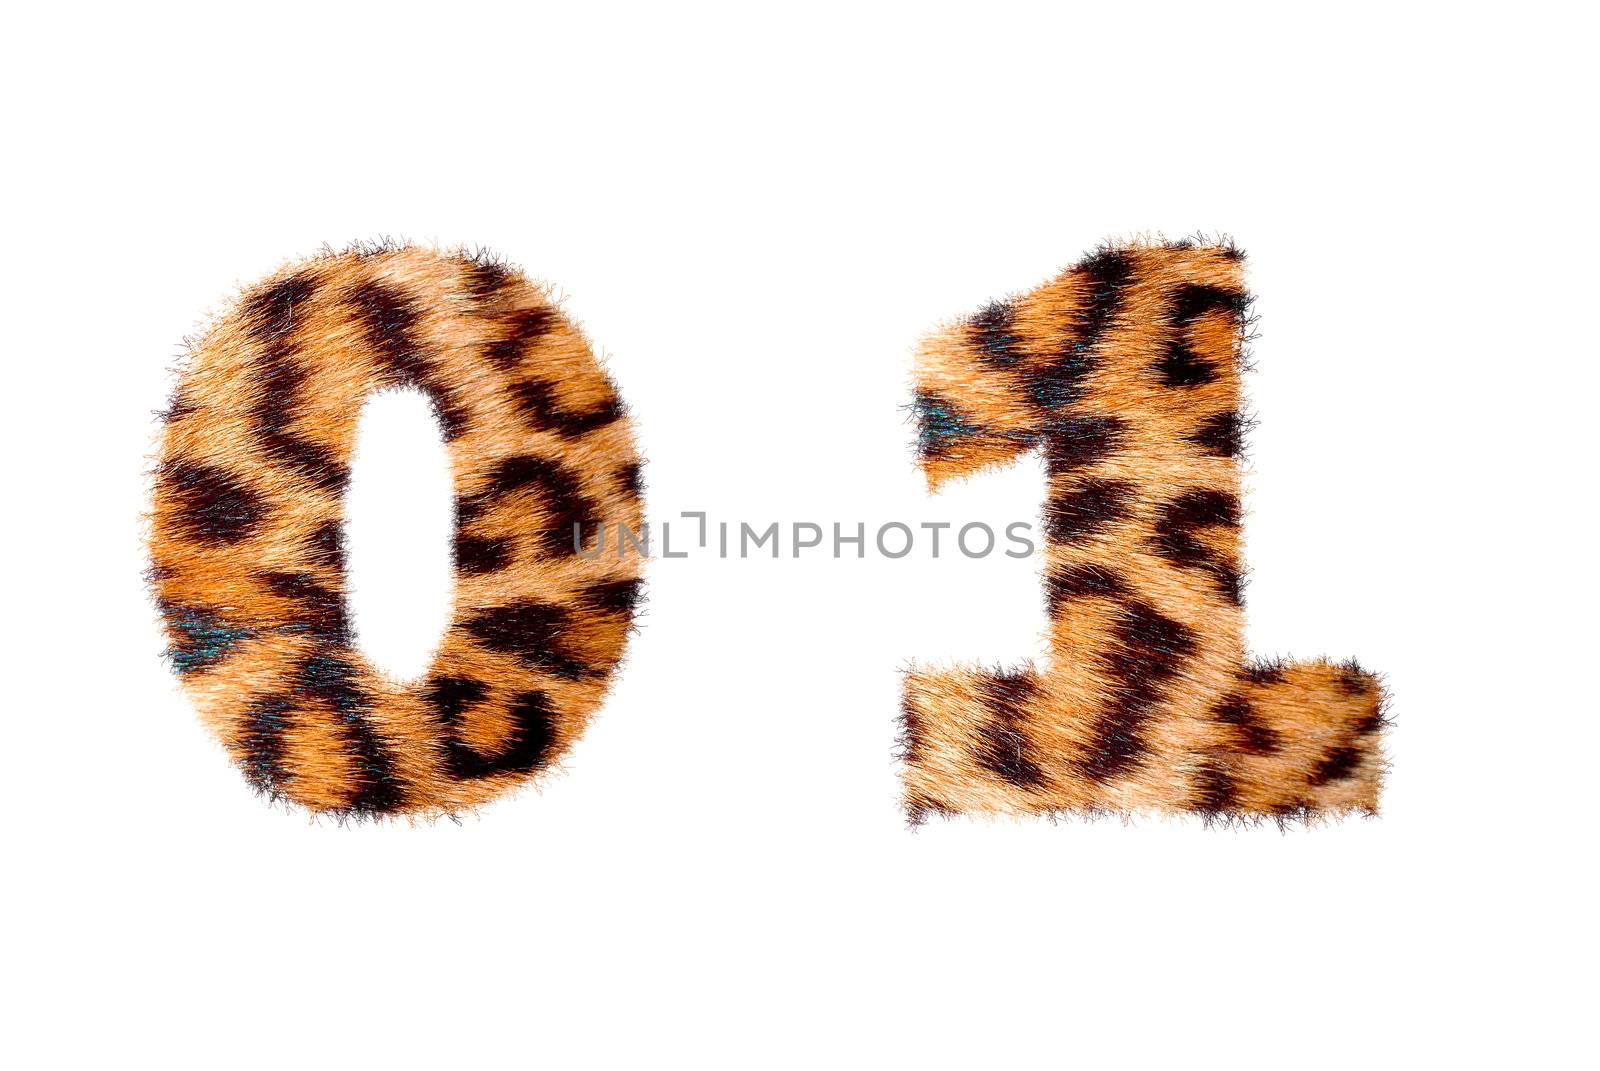 Custom number symbol base on leopard skin by sasilsolutions